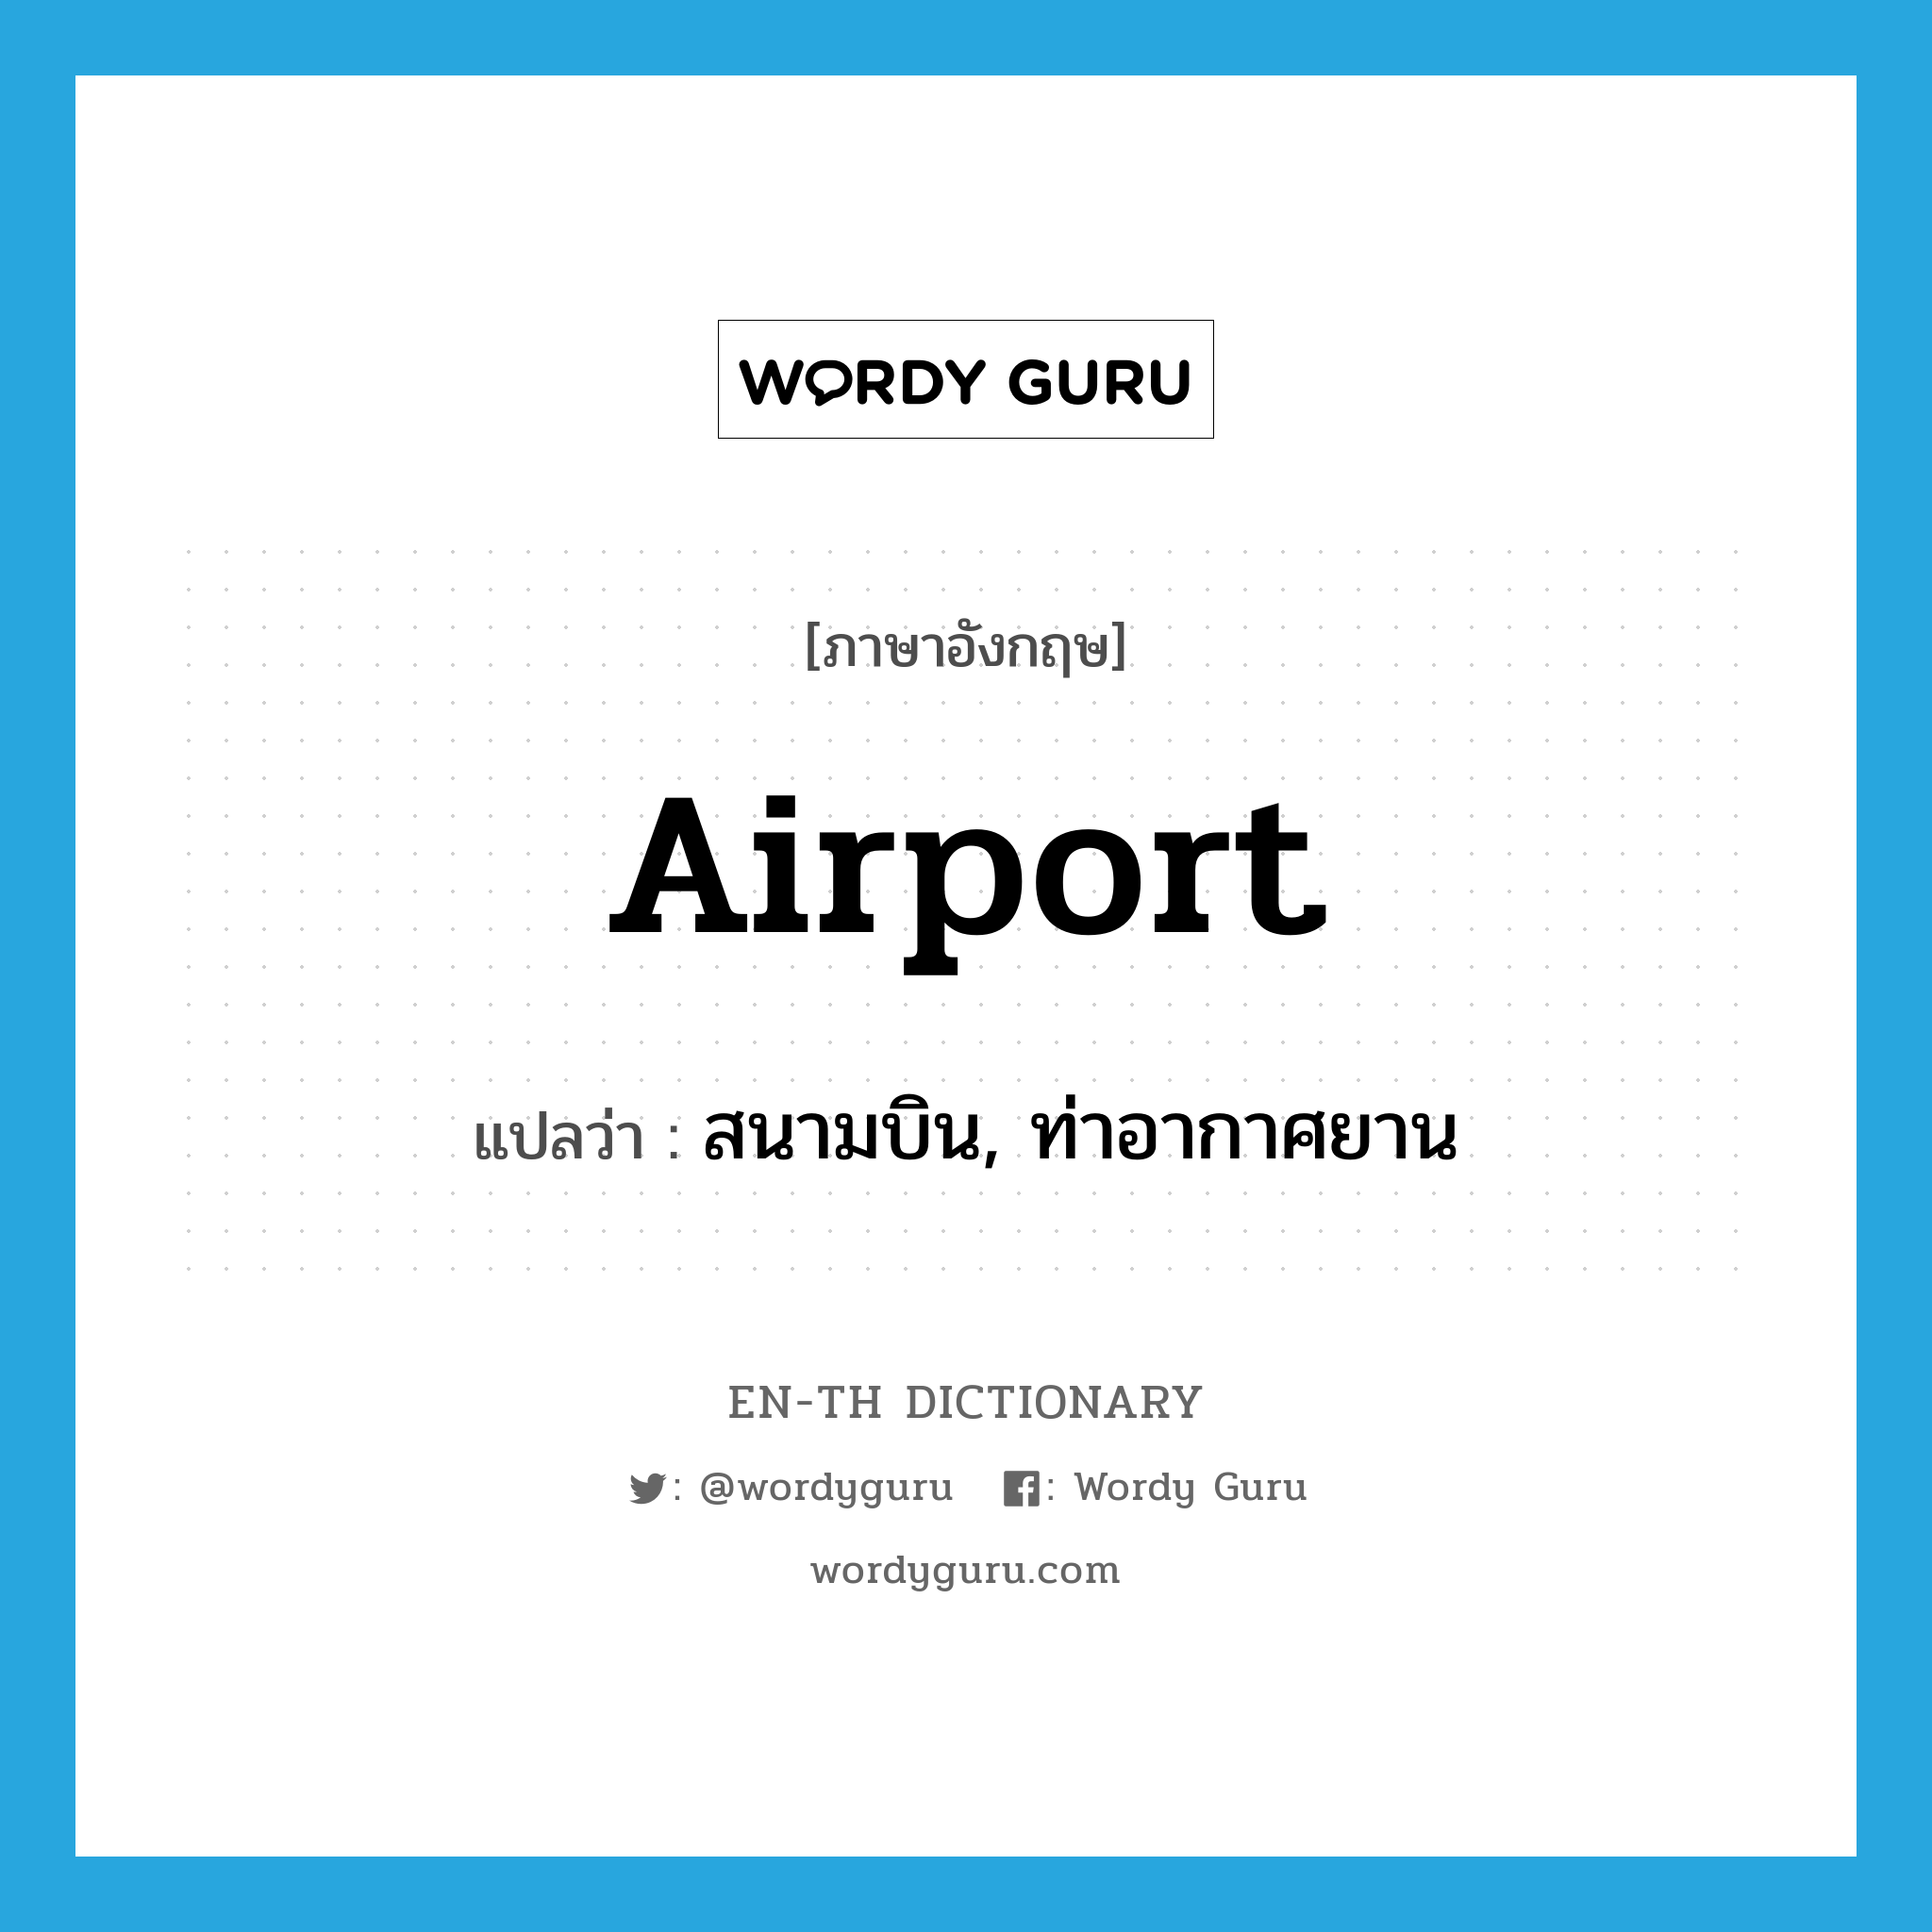 airport แปลว่า?, คำศัพท์ภาษาอังกฤษ airport แปลว่า สนามบิน, ท่าอากาศยาน ประเภท N หมวด N